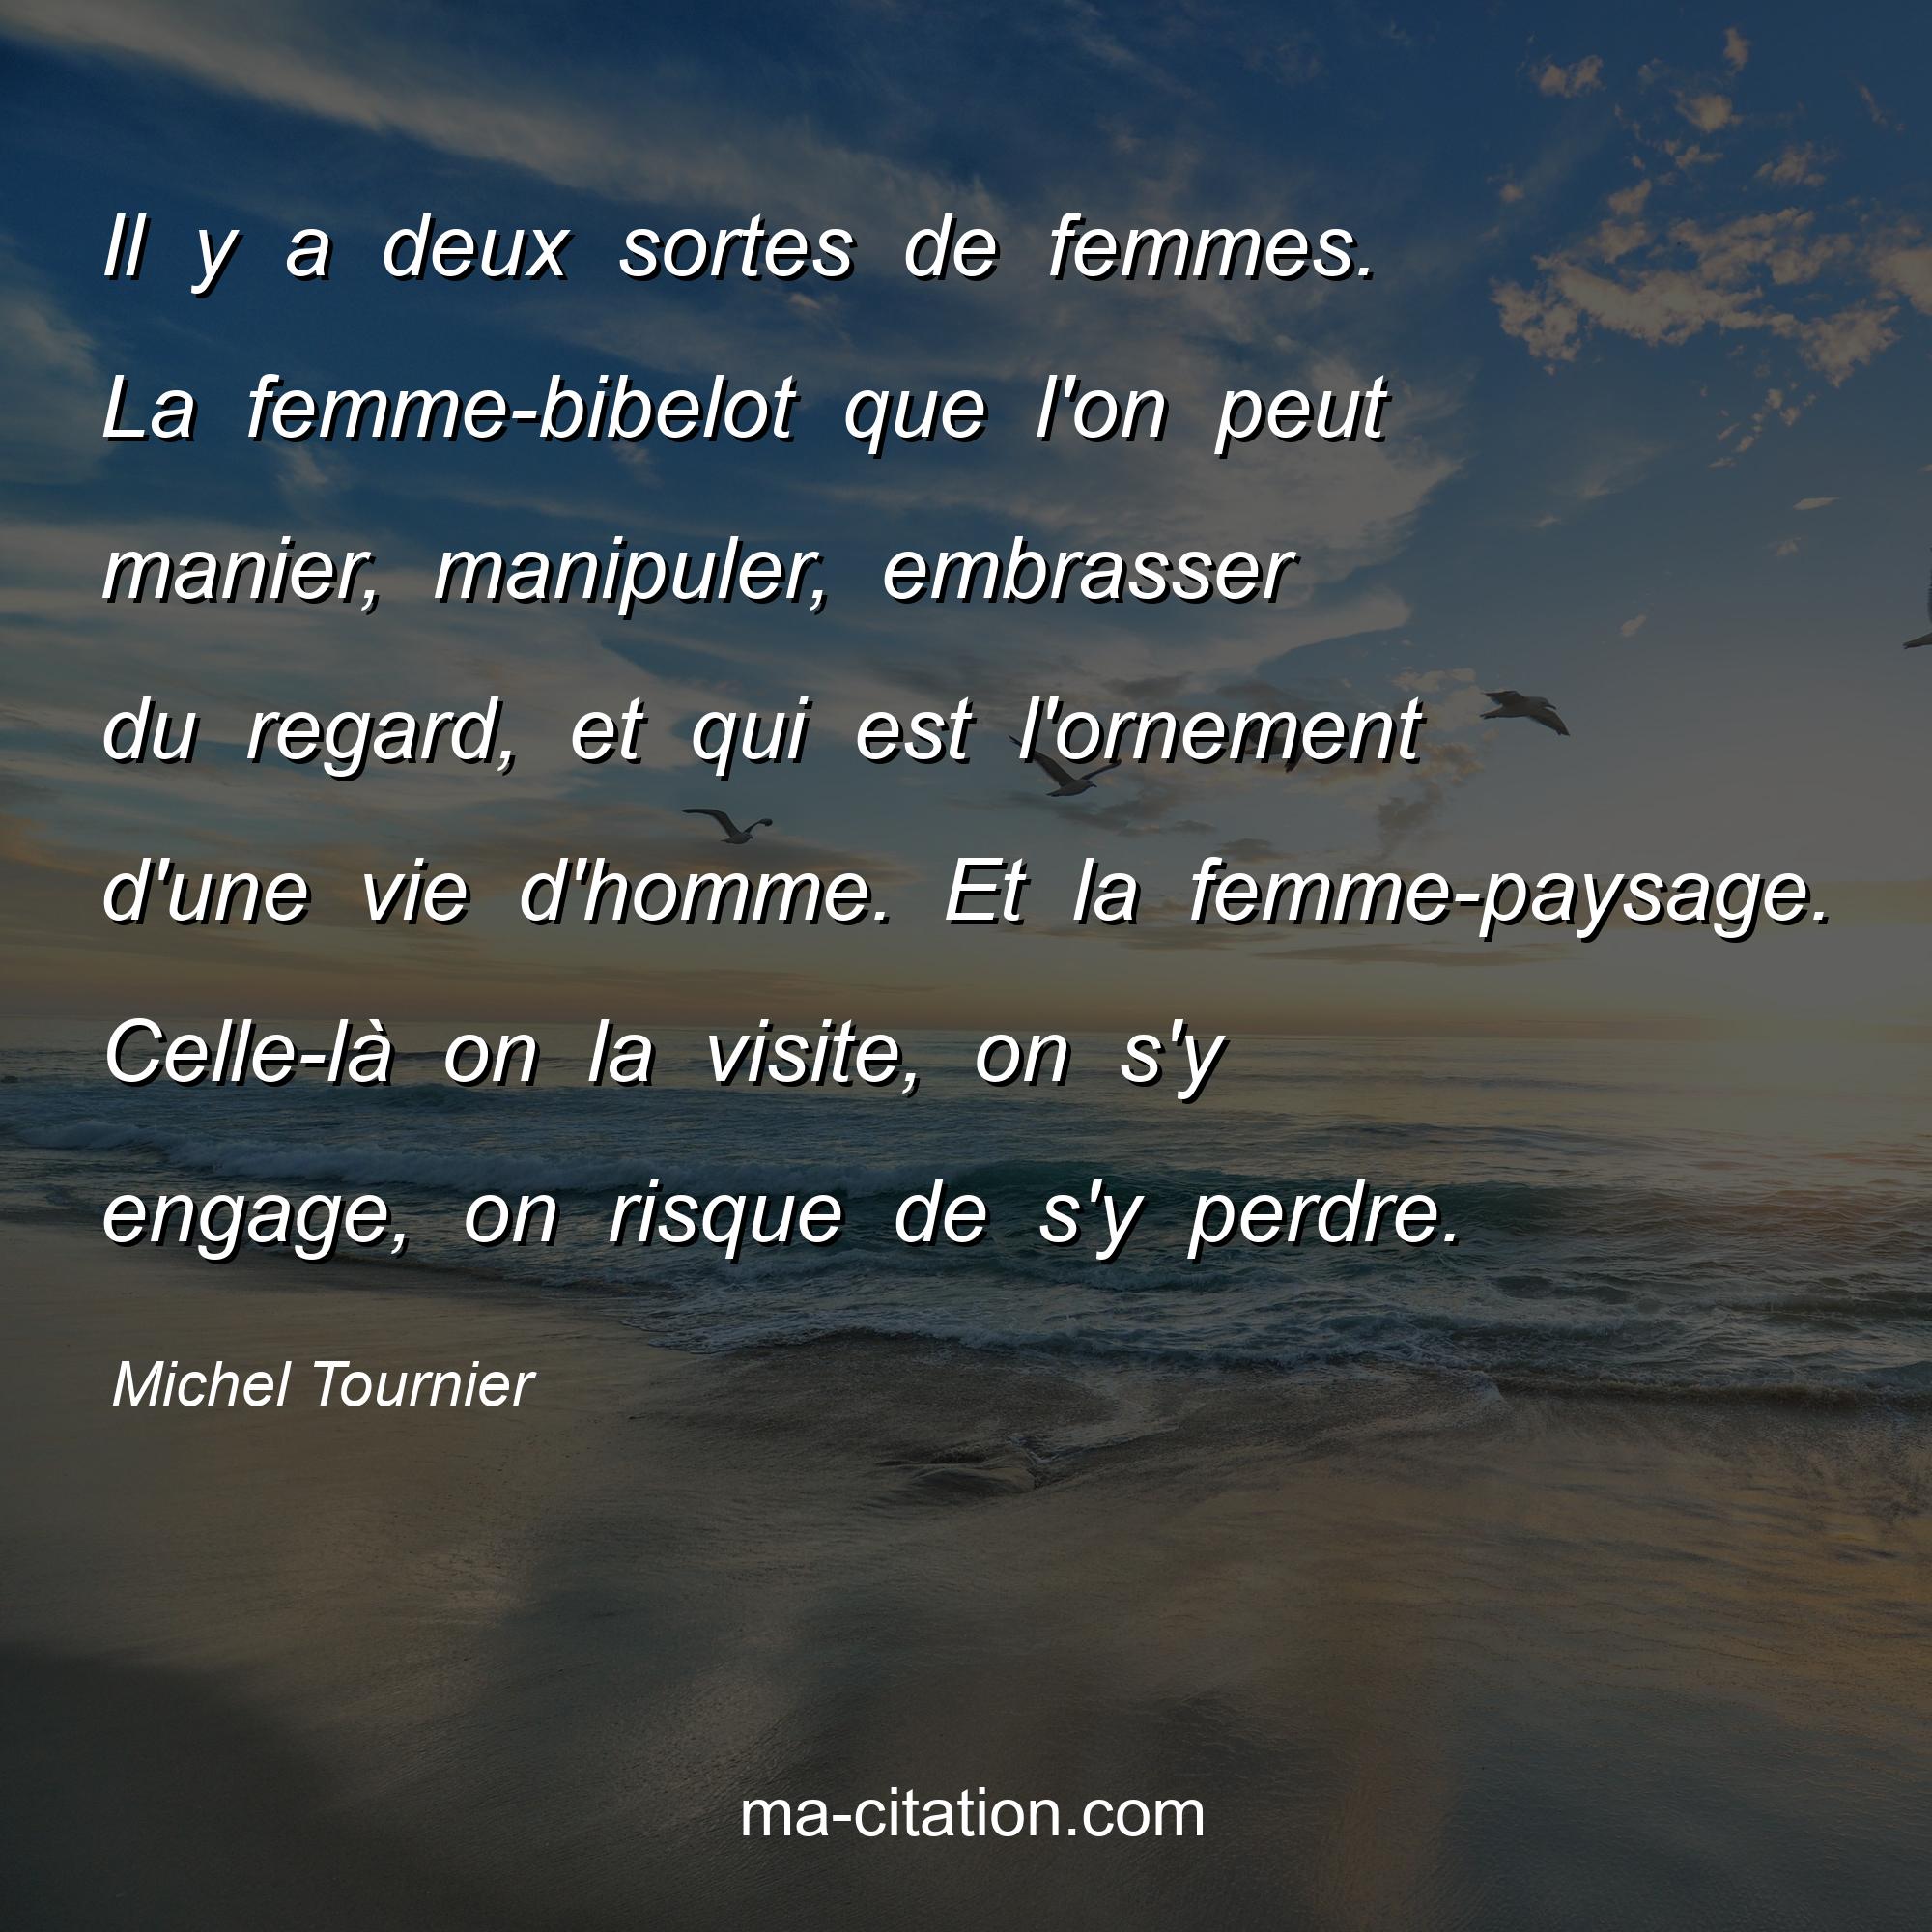 Michel Tournier : Il y a deux sortes de femmes. La femme-bibelot que l'on peut manier, manipuler, embrasser du regard, et qui est l'ornement d'une vie d'homme. Et la femme-paysage. Celle-là on la visite, on s'y engage, on risque de s'y perdre.